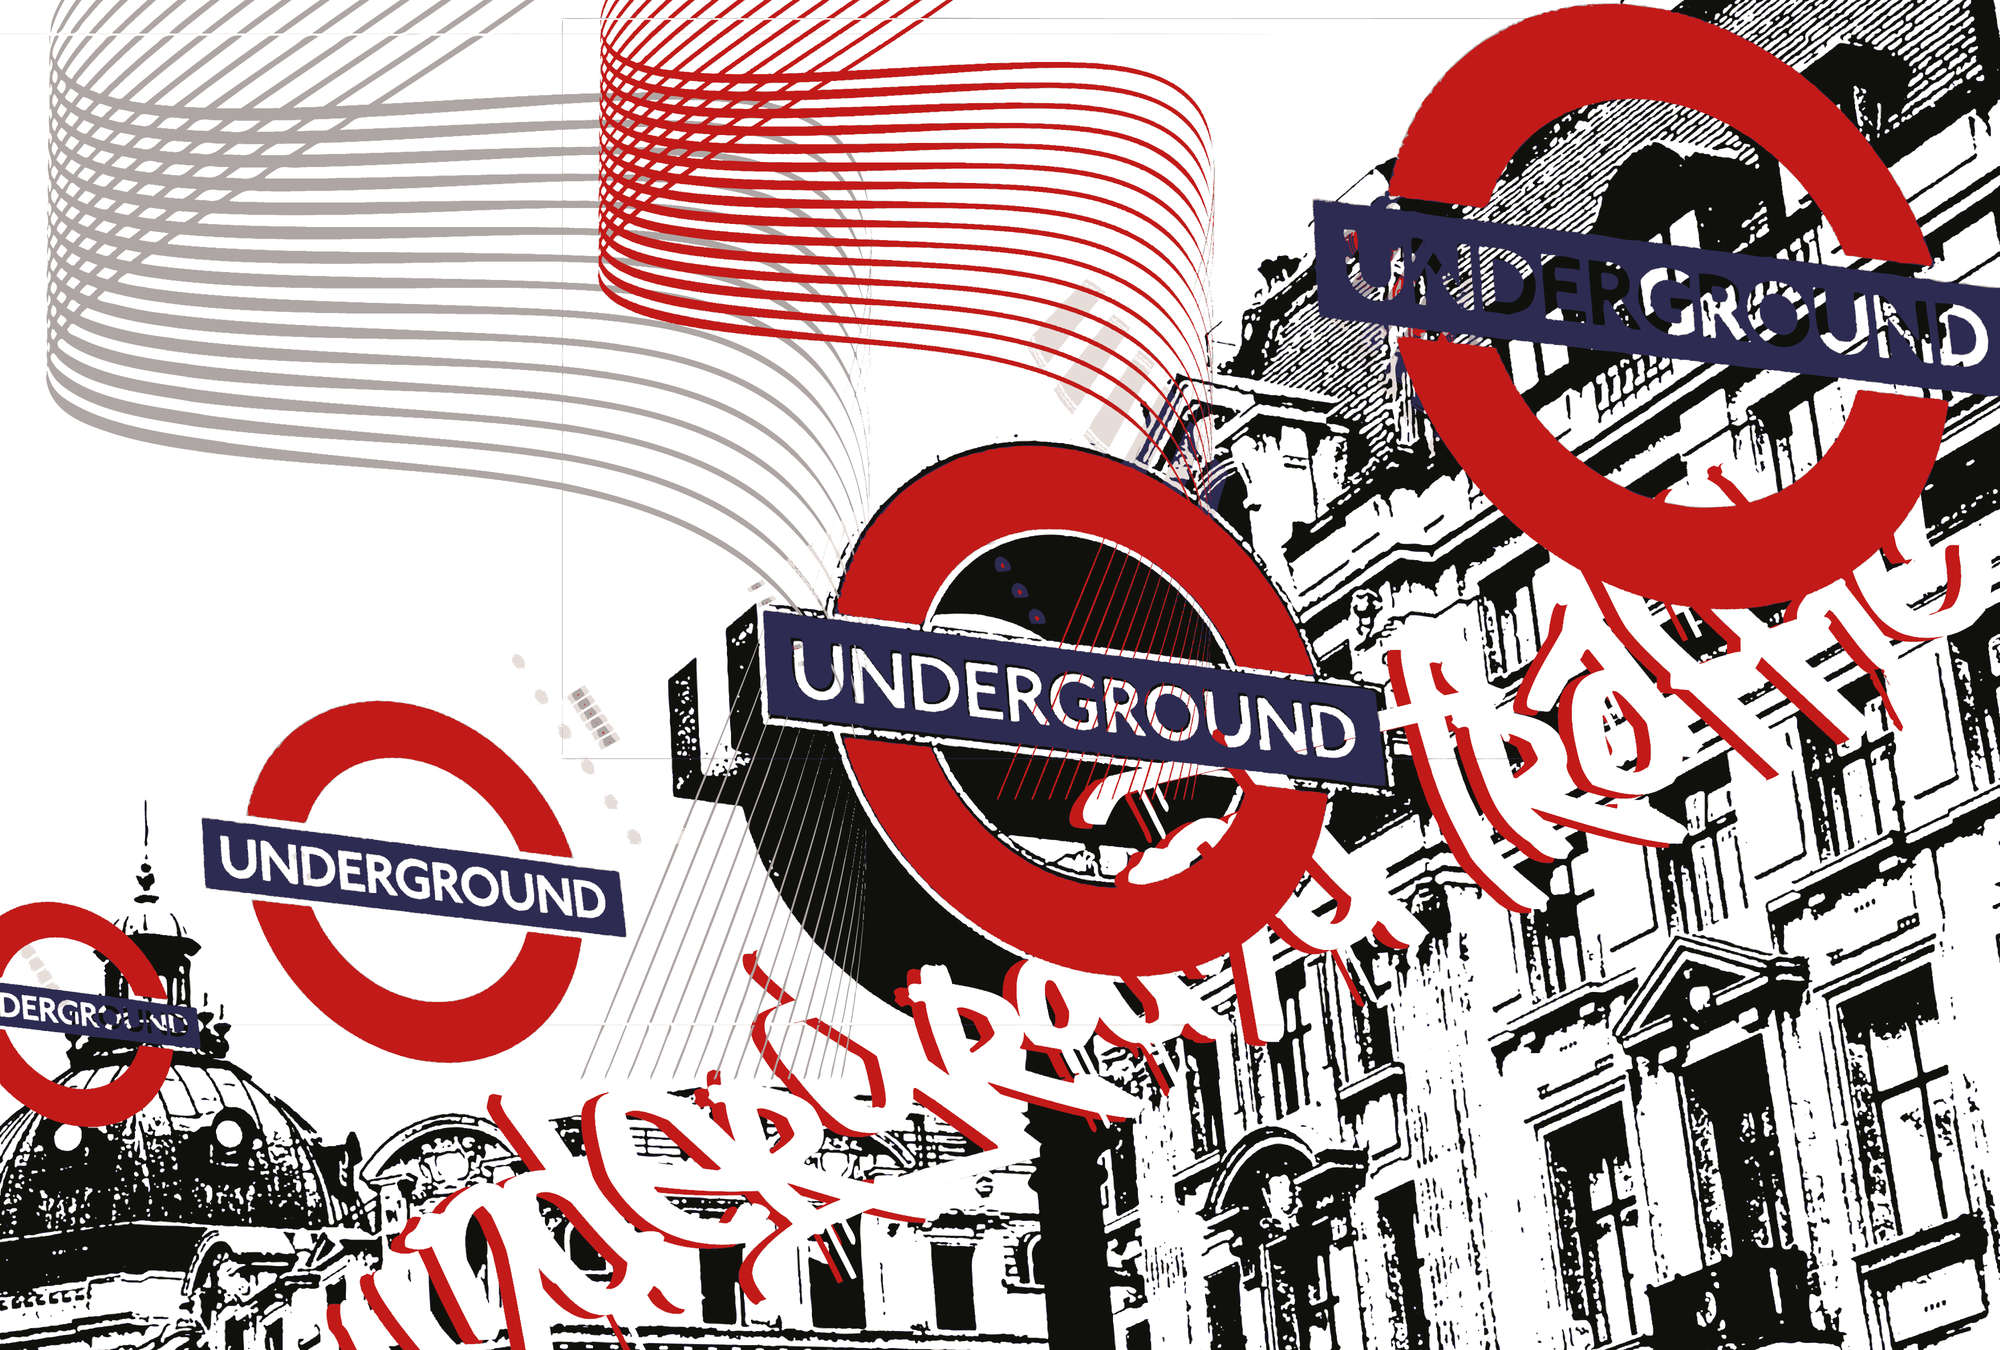             Metropolitana - Fotomurali in stile londinese, urbano e moderno
        